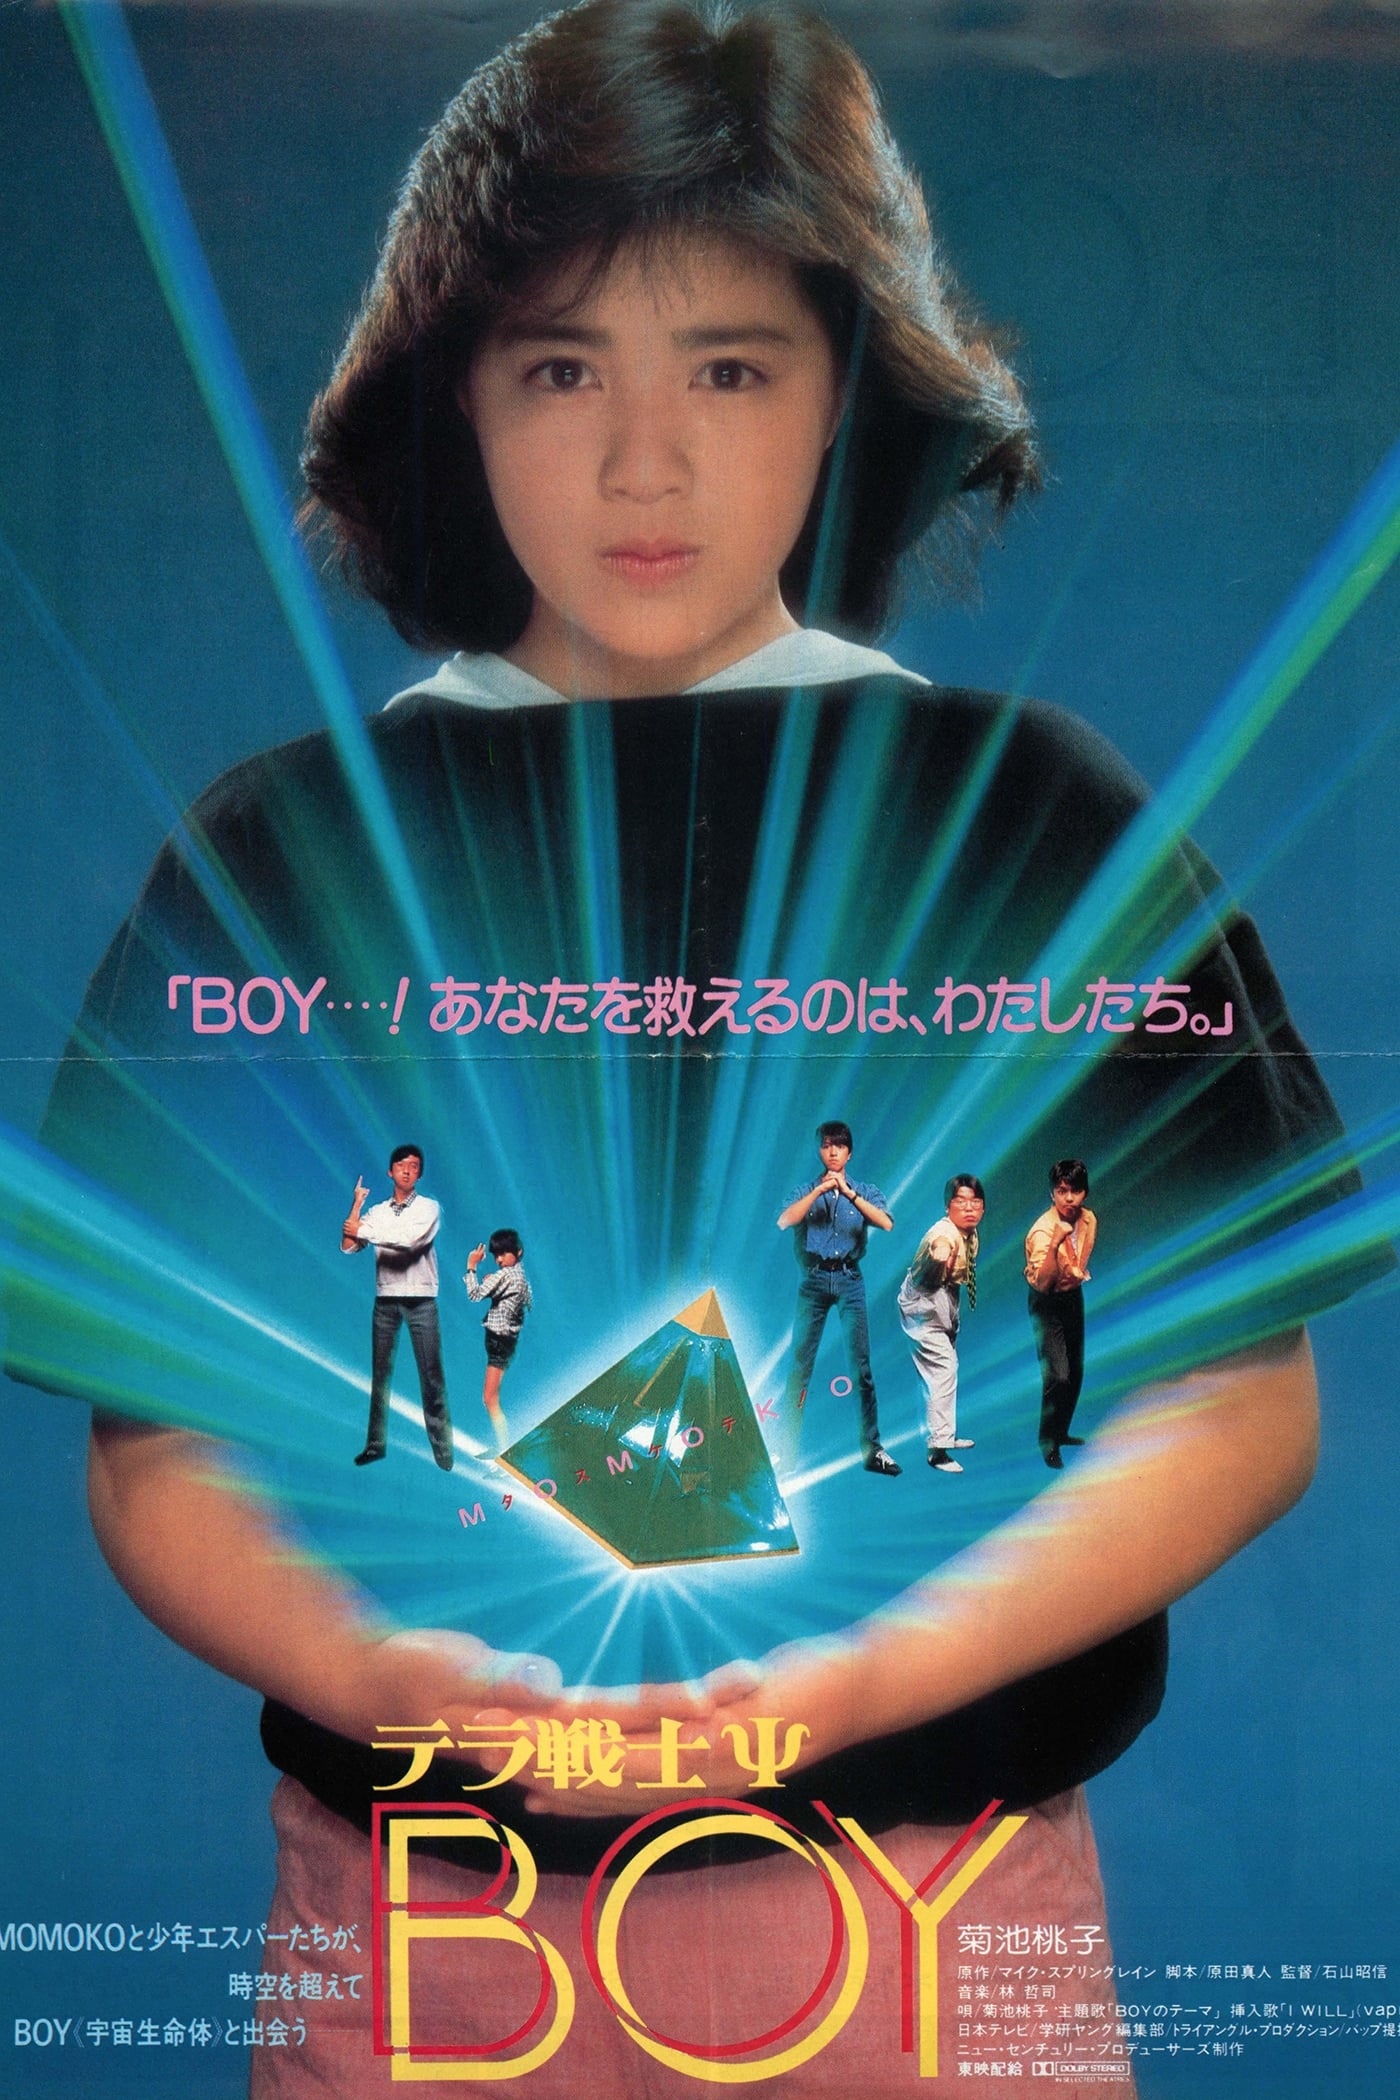 Terra Warrior Ps Boy 1985 Movie Where To Watch Streaming Online Plot